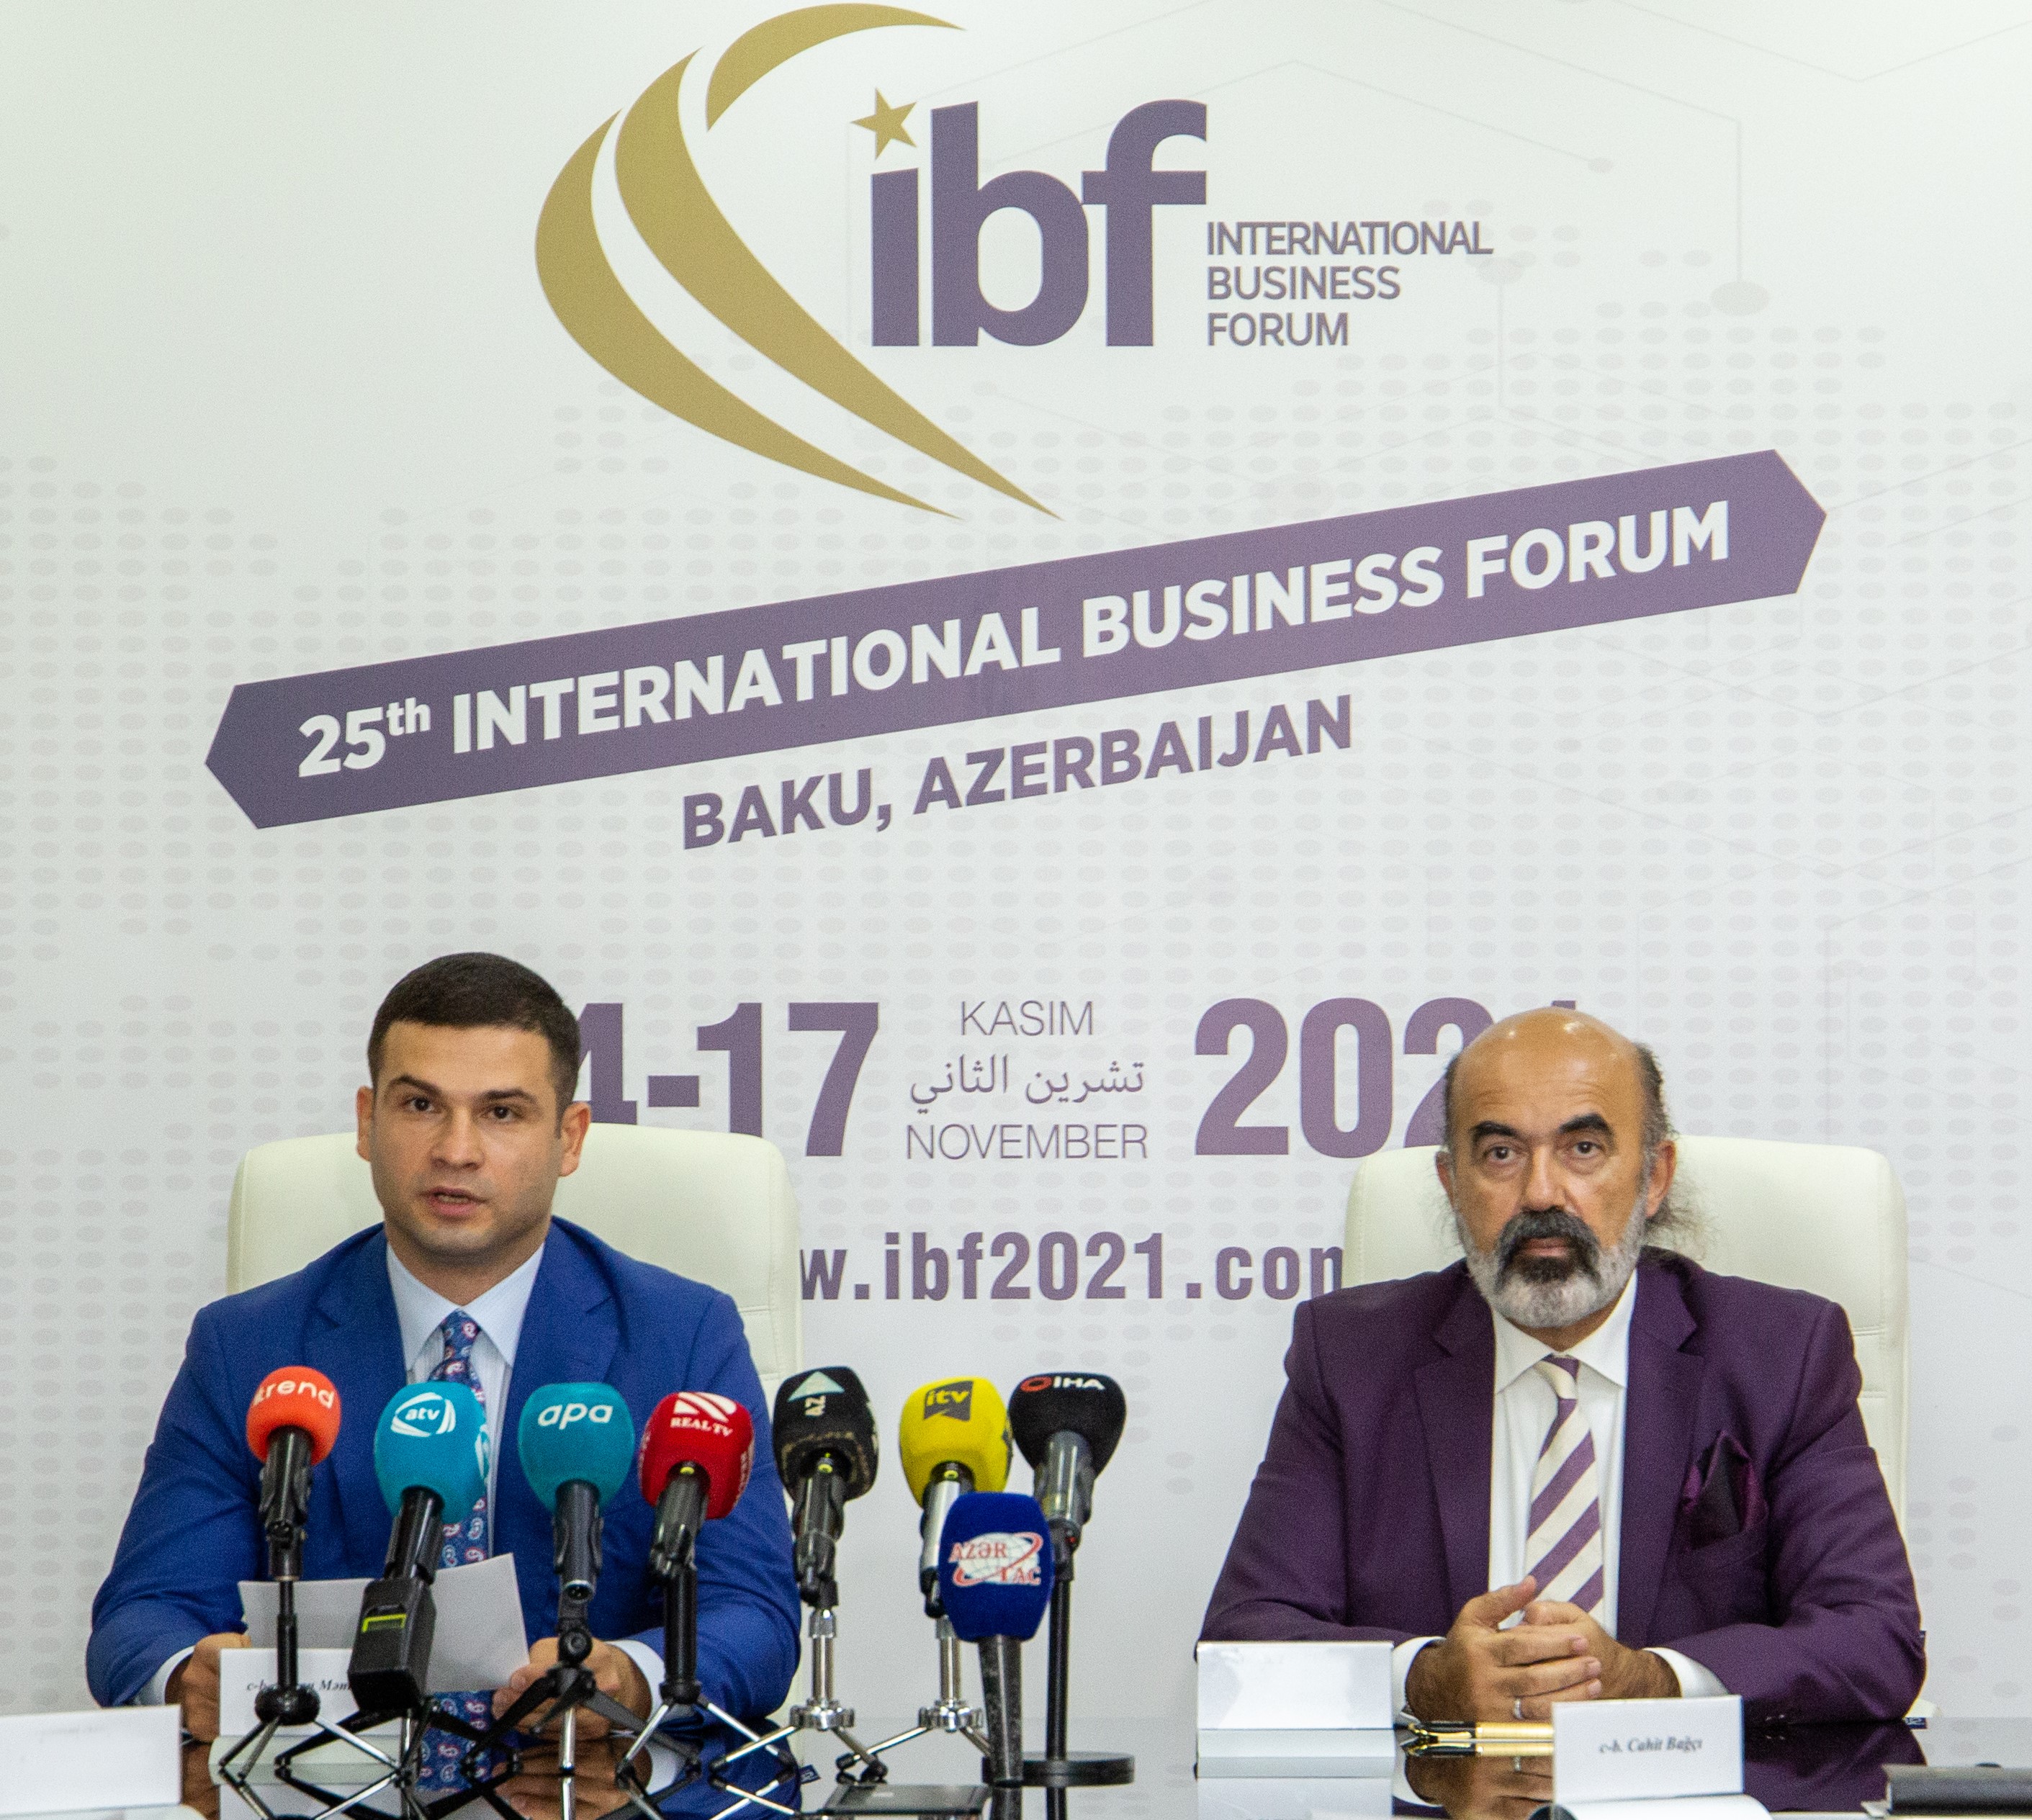 Состоялась пресс-конференция в связи с Международным Бизнес-Форумом, который пройдет в Баку 